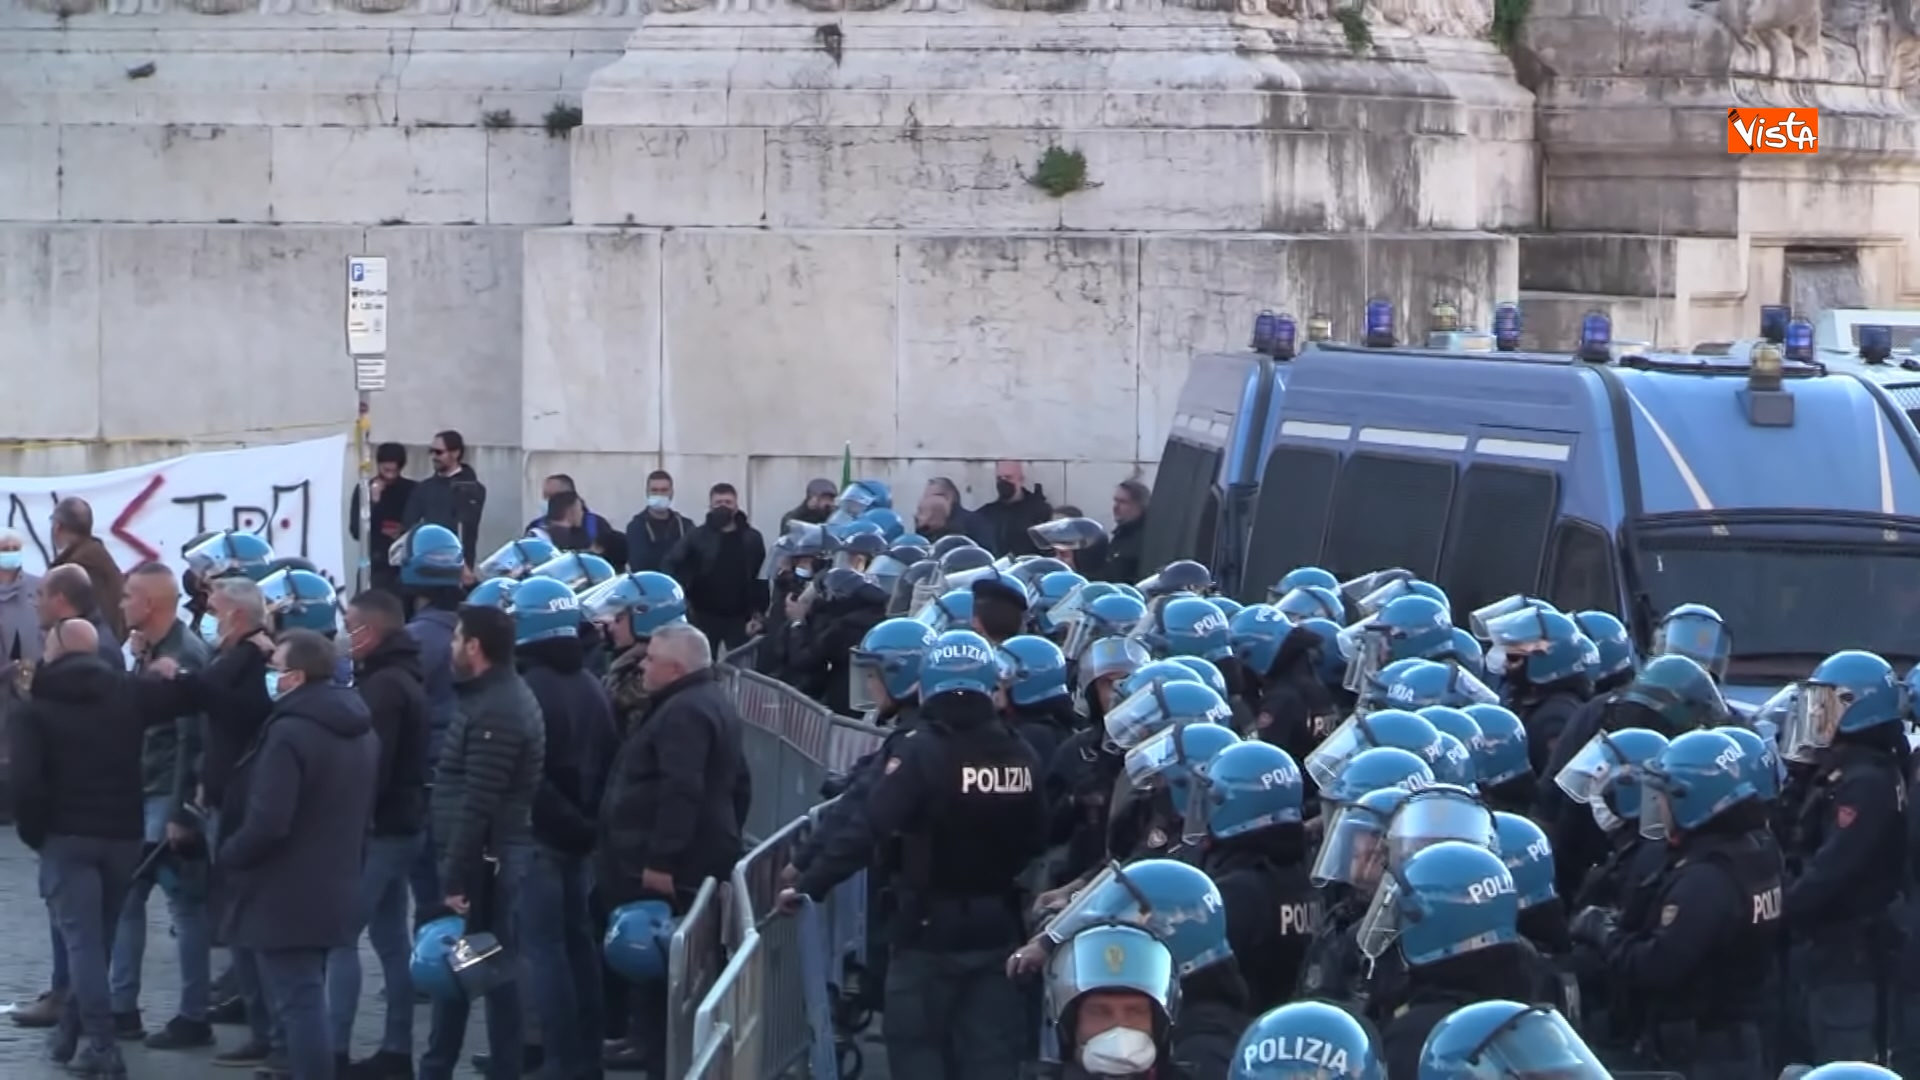 24-11-21 Protesta dei tassisti a Roma contro il Ddl concorrenza le immagini